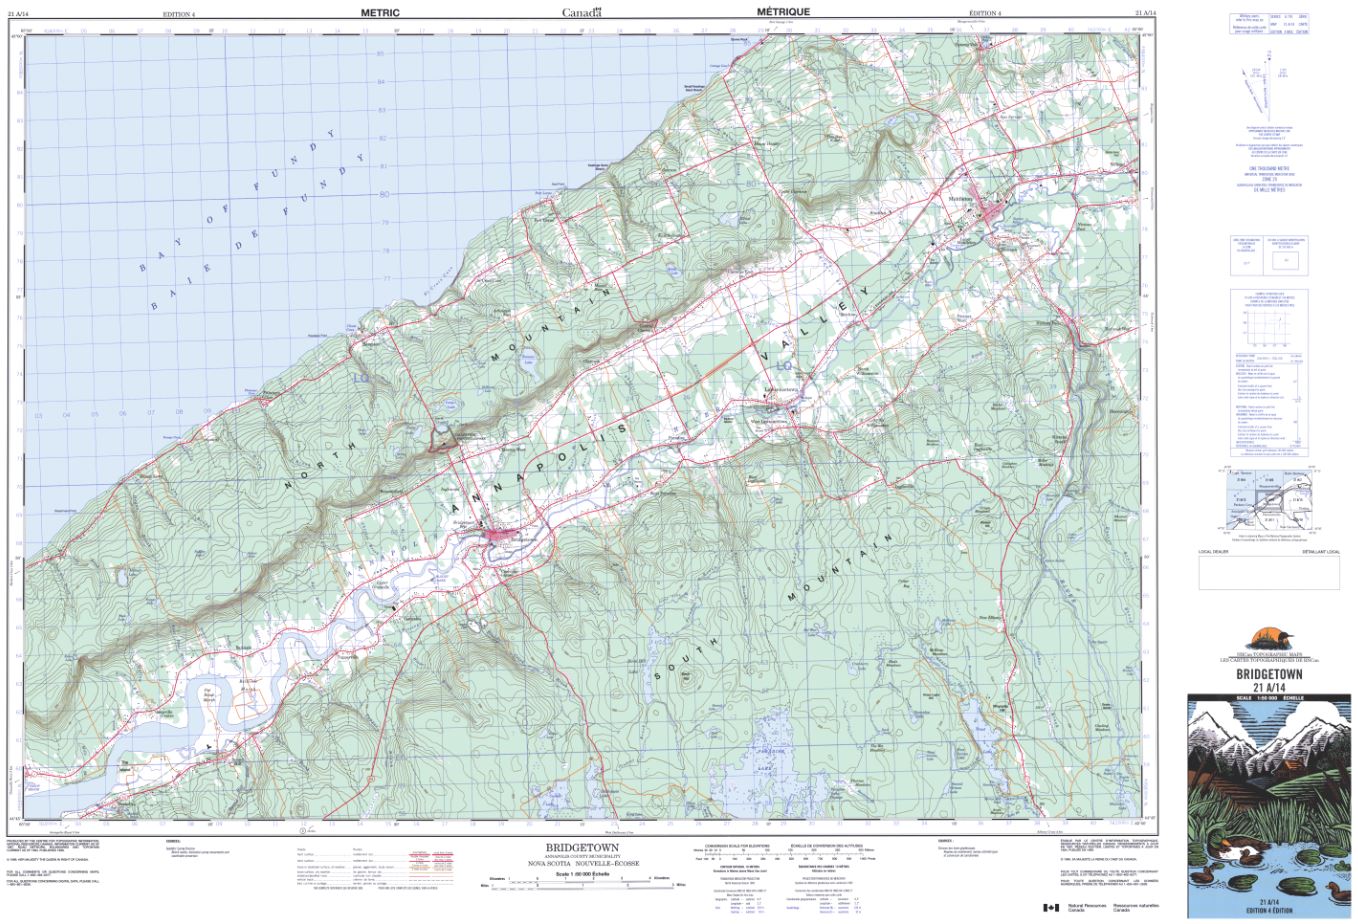 21A/14 Bridgetown Topographic Map Nova Scotia